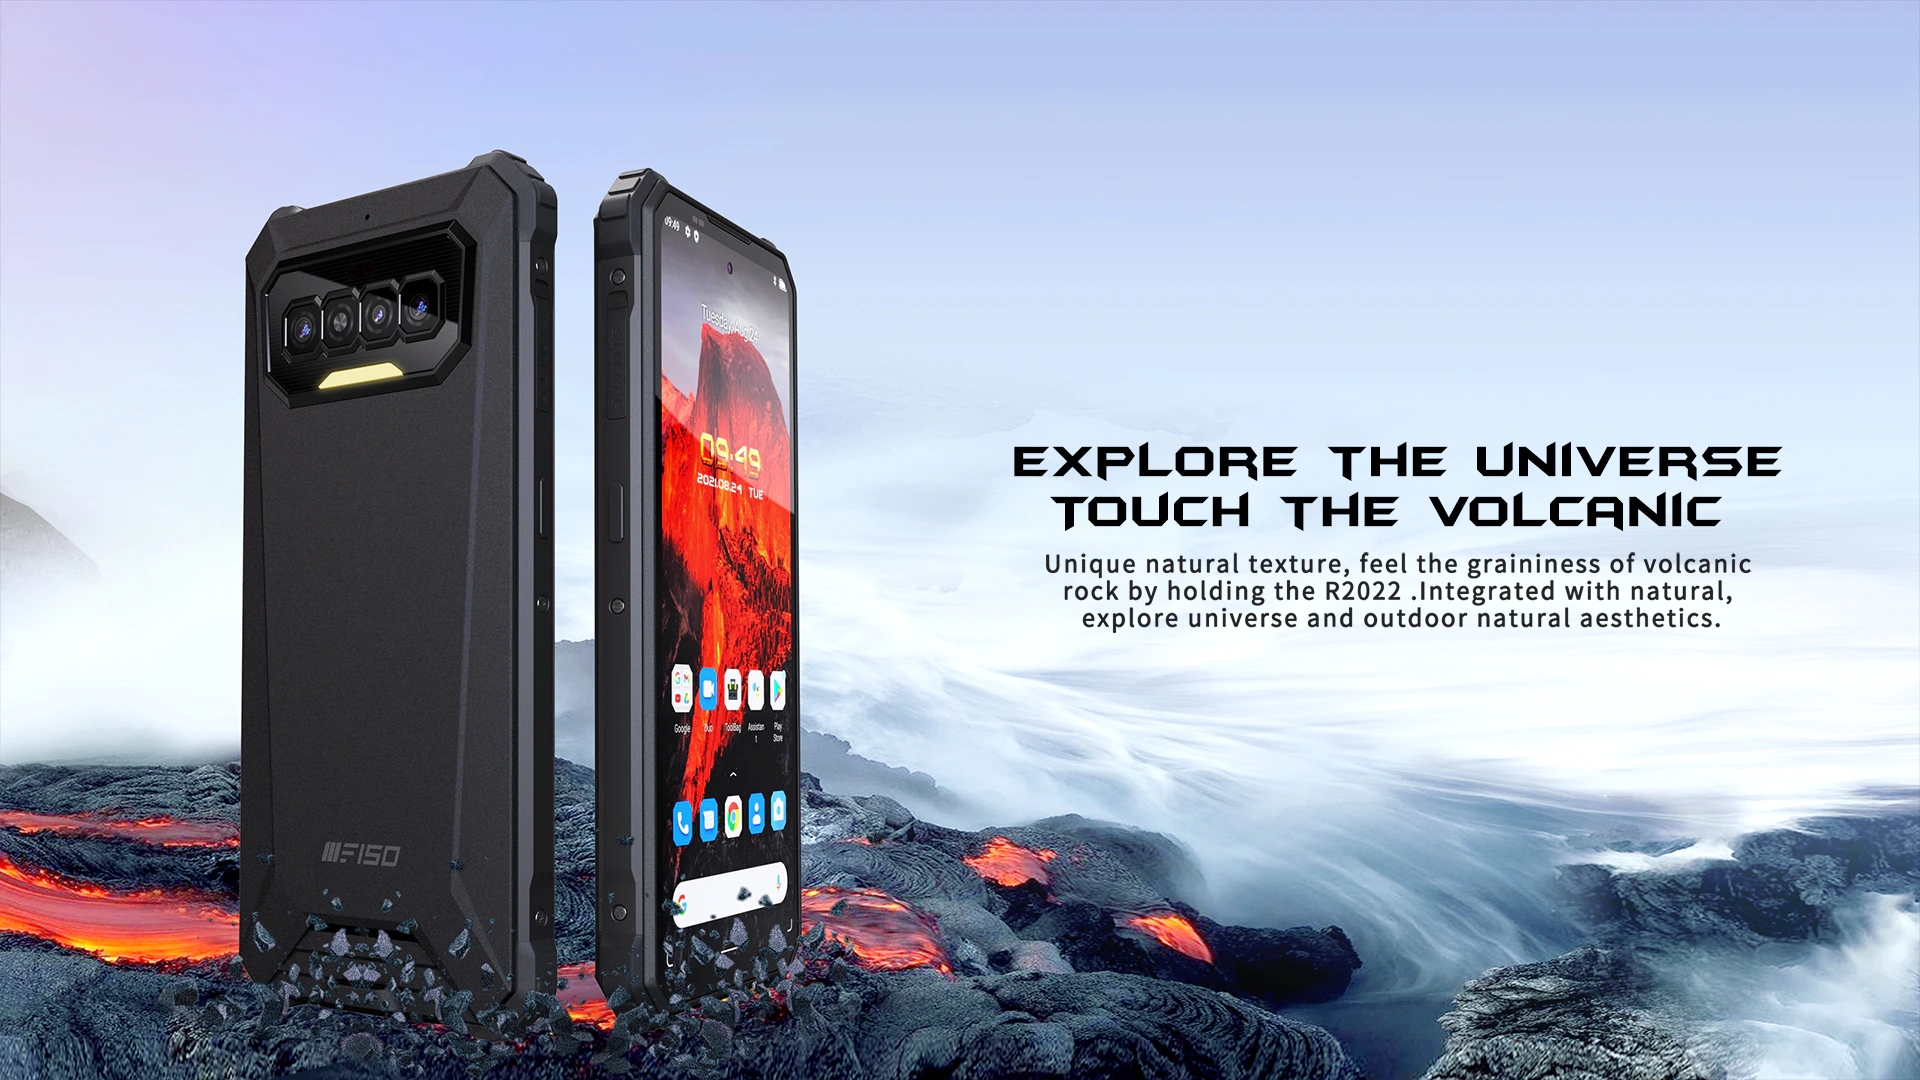 iiiF150 R2022 wchodzi na AliExpress: wytrzymały smartfon z ekranem 90Hz, NFC i baterią 8300mAh za 200$